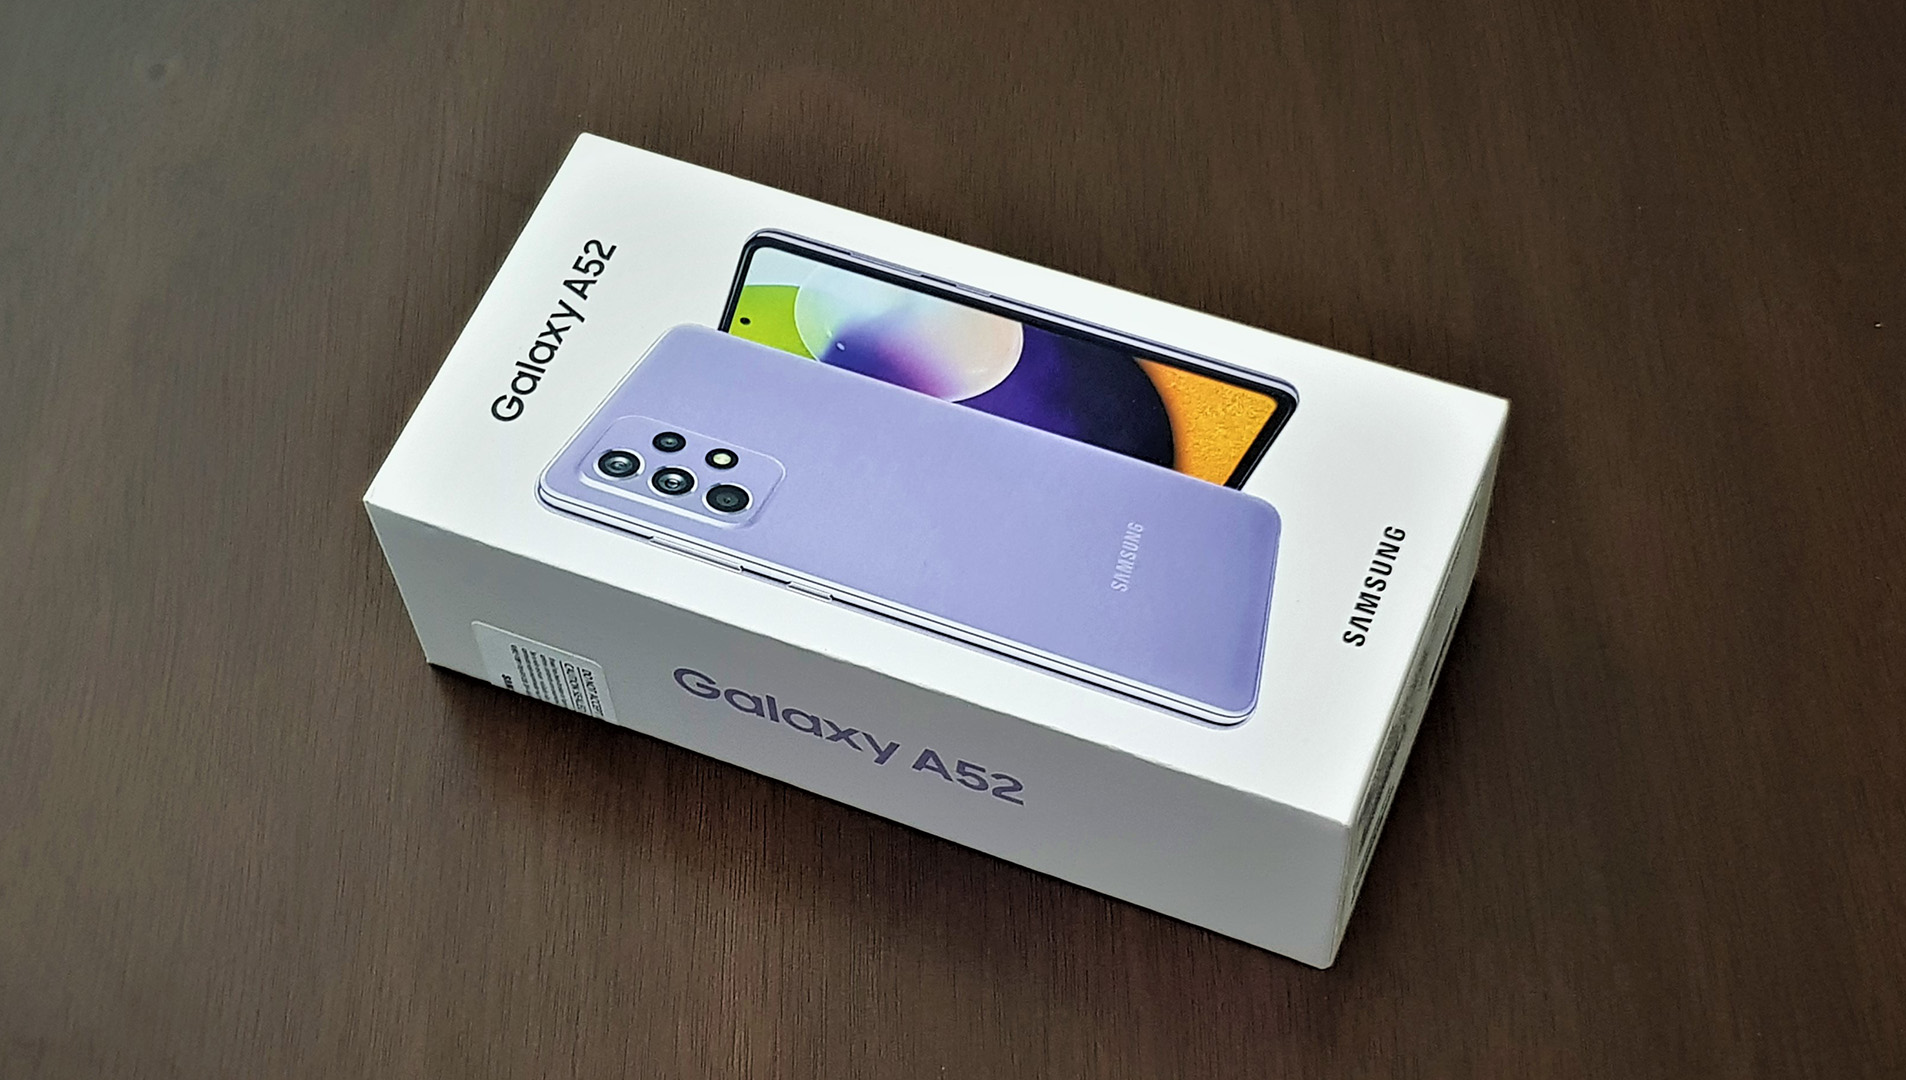 סמסונג גלקסי Galaxy A52 סקירה מלאה – האם זהו סמארטפון הביניים הטוב ביותר?